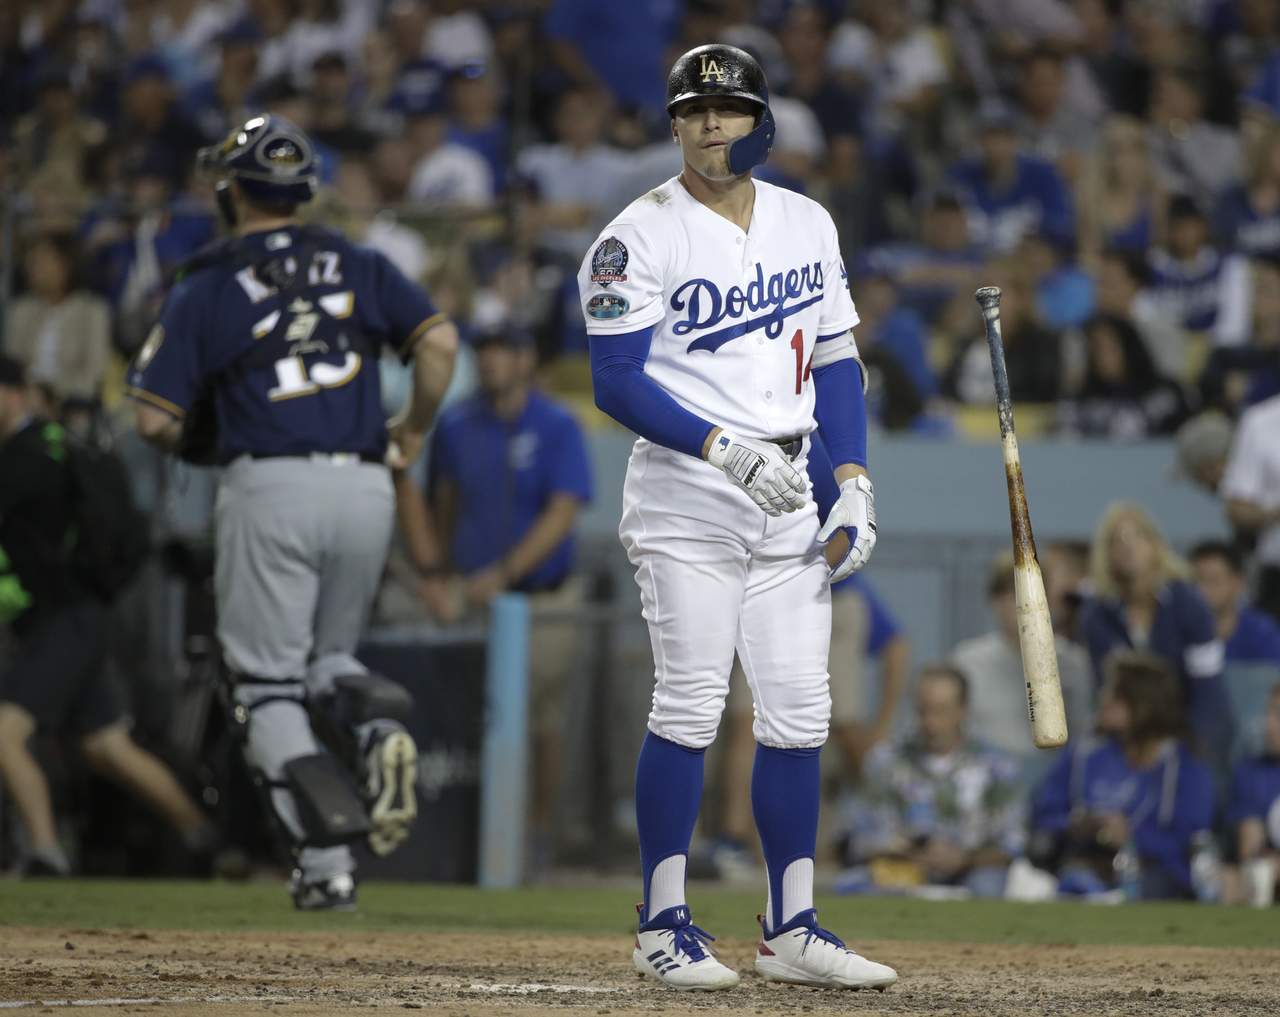 Se disculpa Hernández tras criticar a fanáticos de Dodgers. Noticias en tiempo real